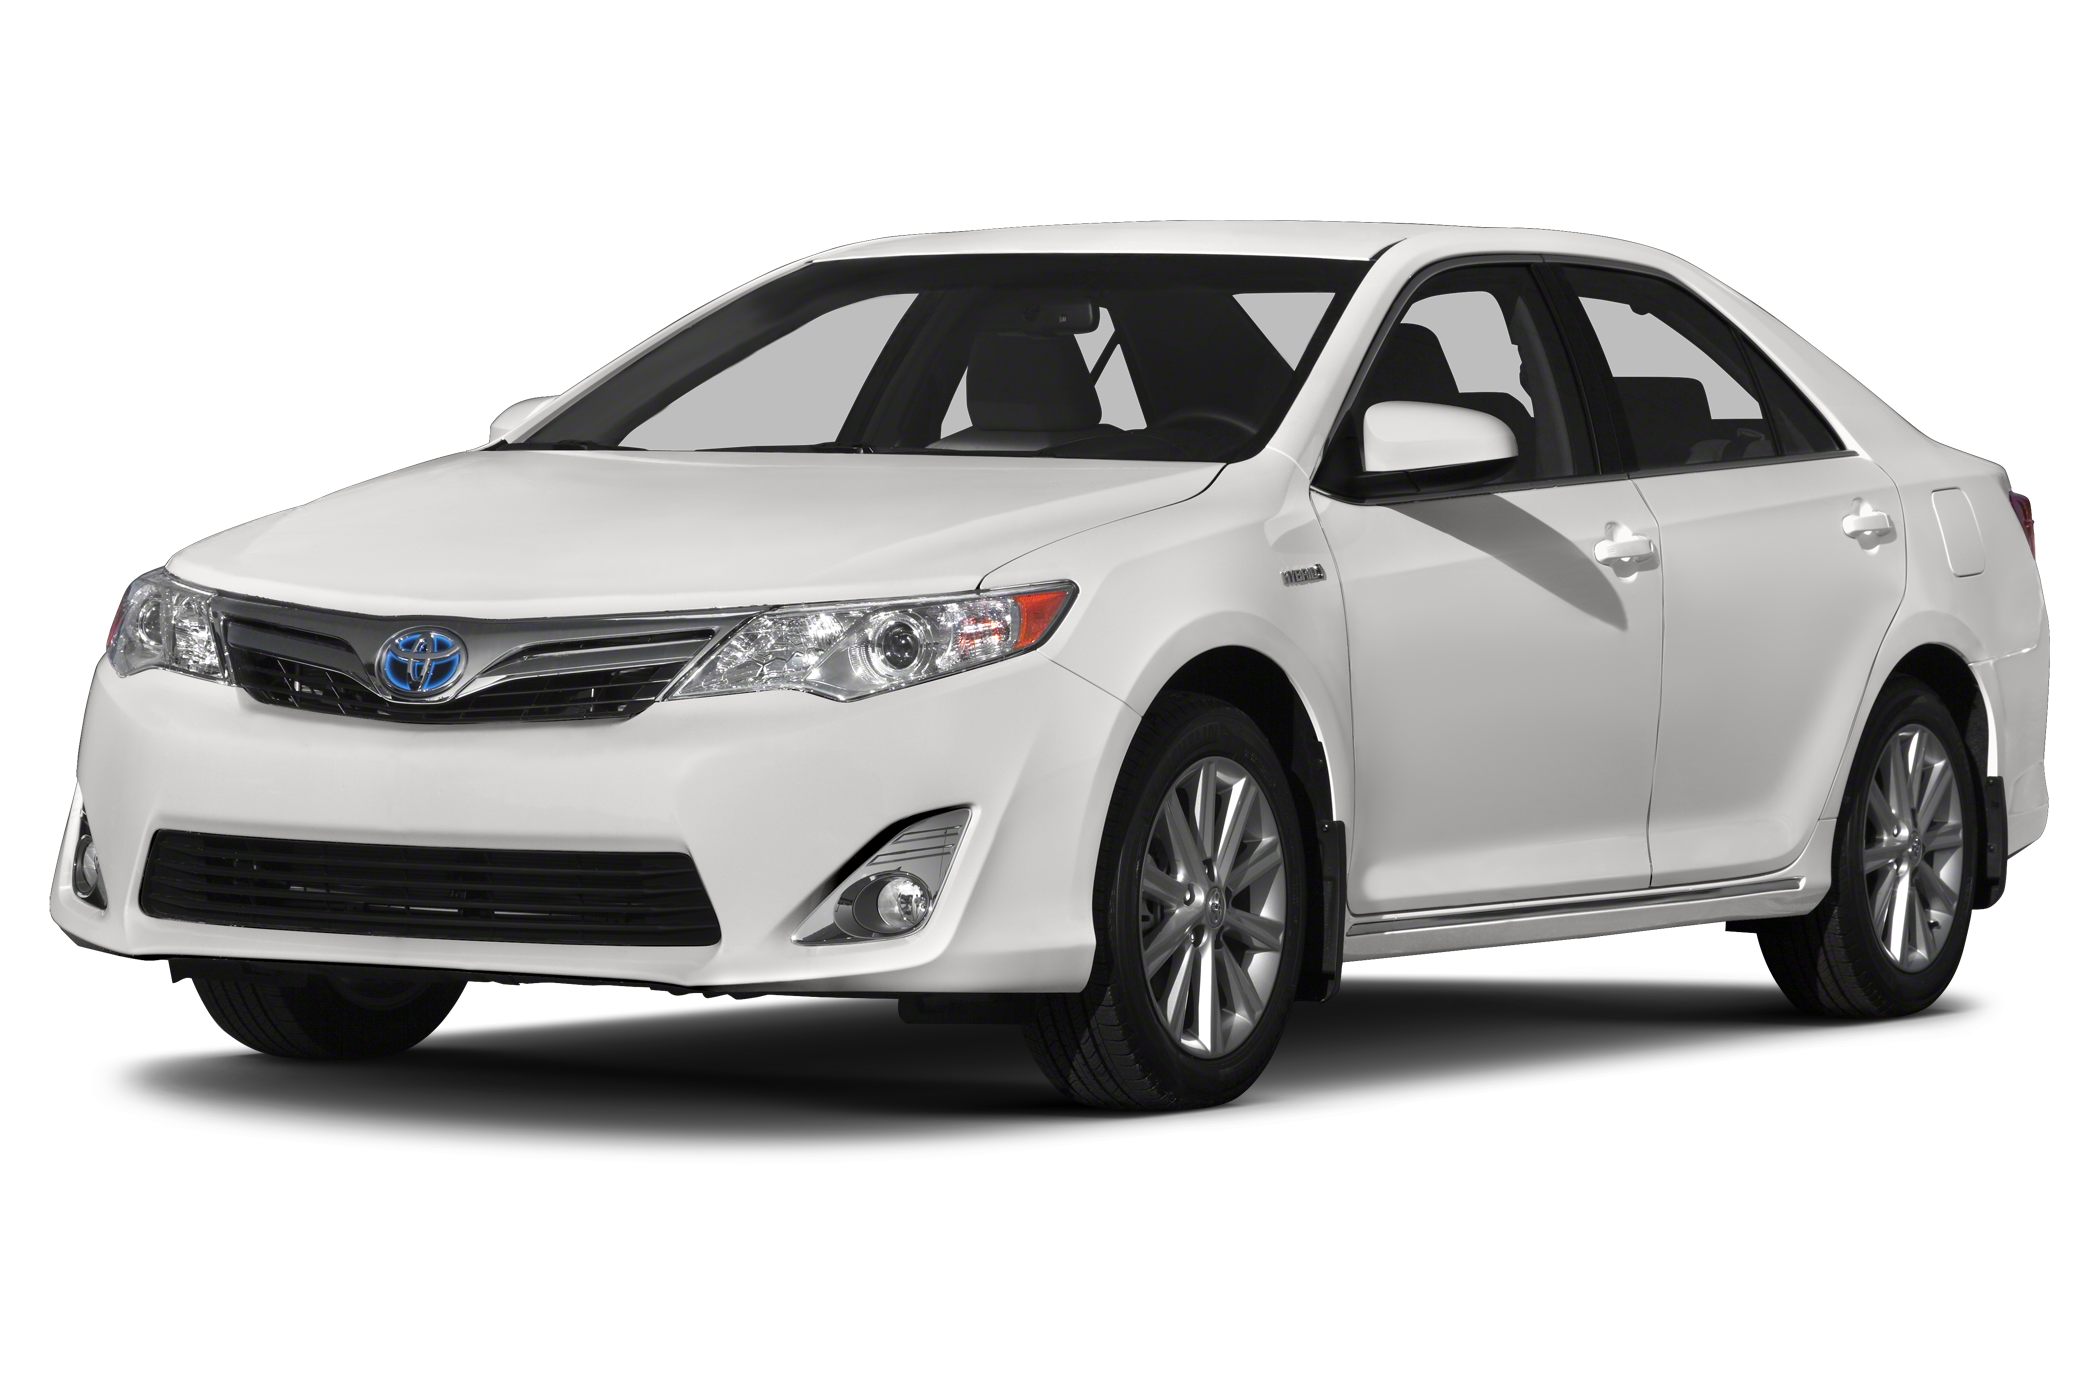 2014 Toyota Camry Hybrid Information